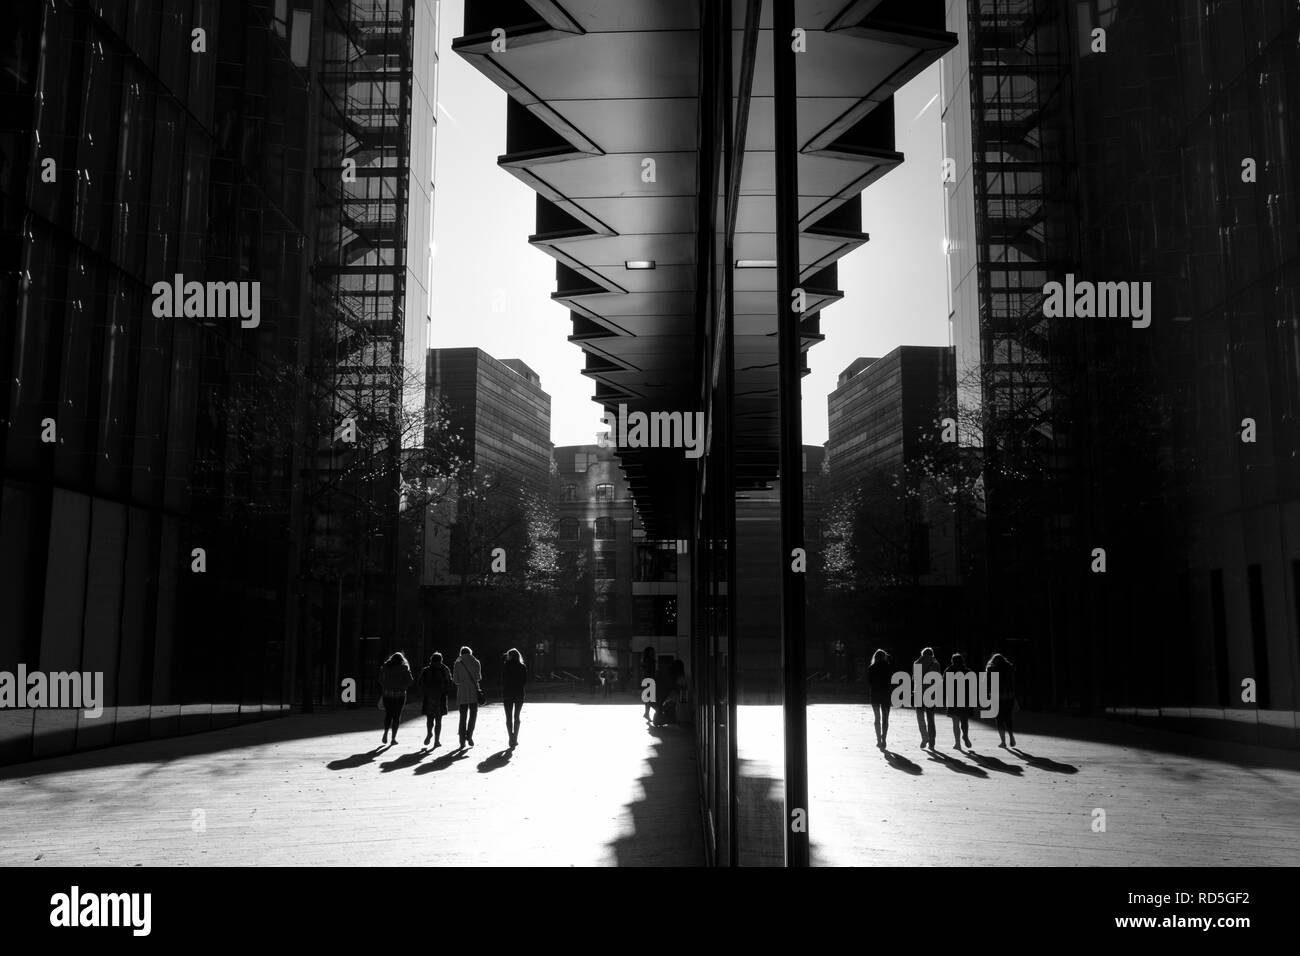 Londra in bianco e nero street photography: riflessioni architettoniche e le ombre. Foto Stock